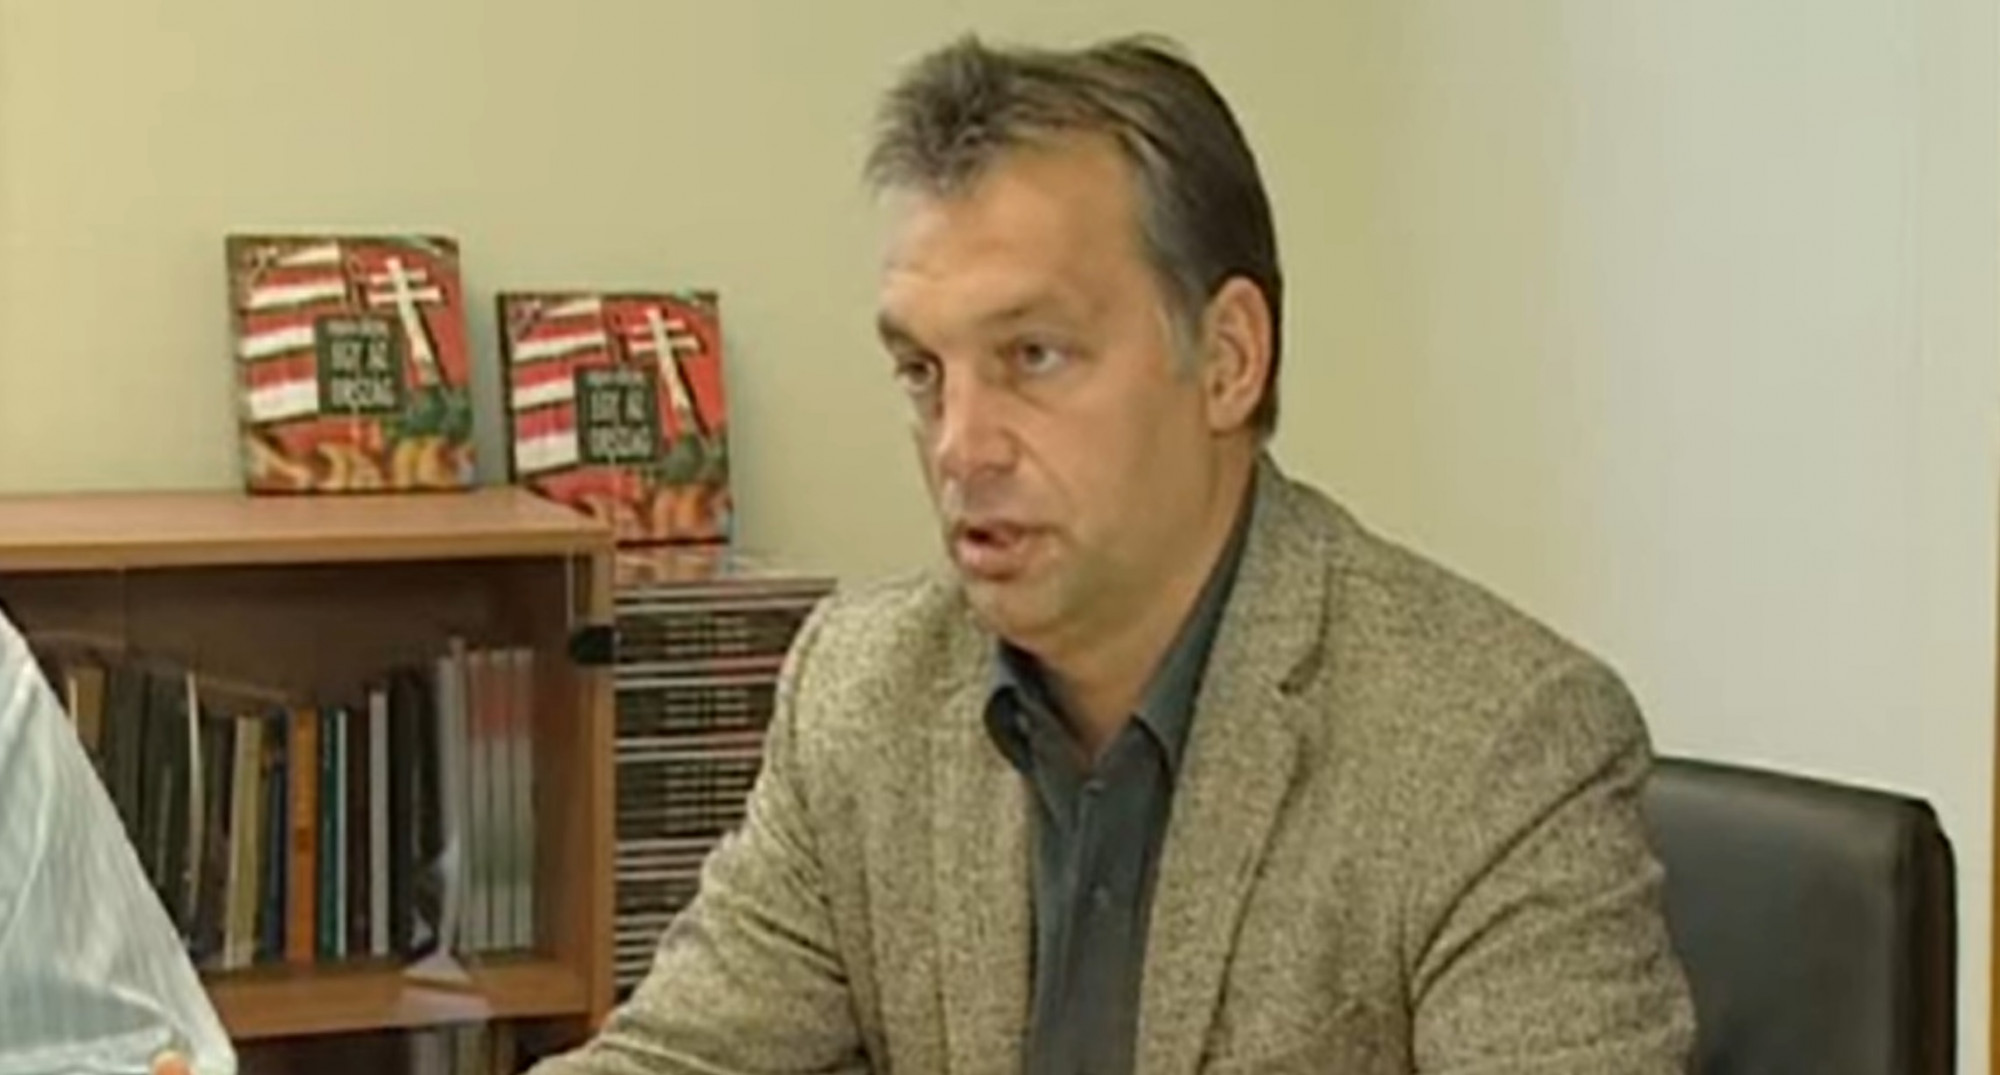 Orbán Viktor korábban úgy látta, hogy csak putyini típusú rendszerekben fordulhat elő az orvosok megfélemlítése